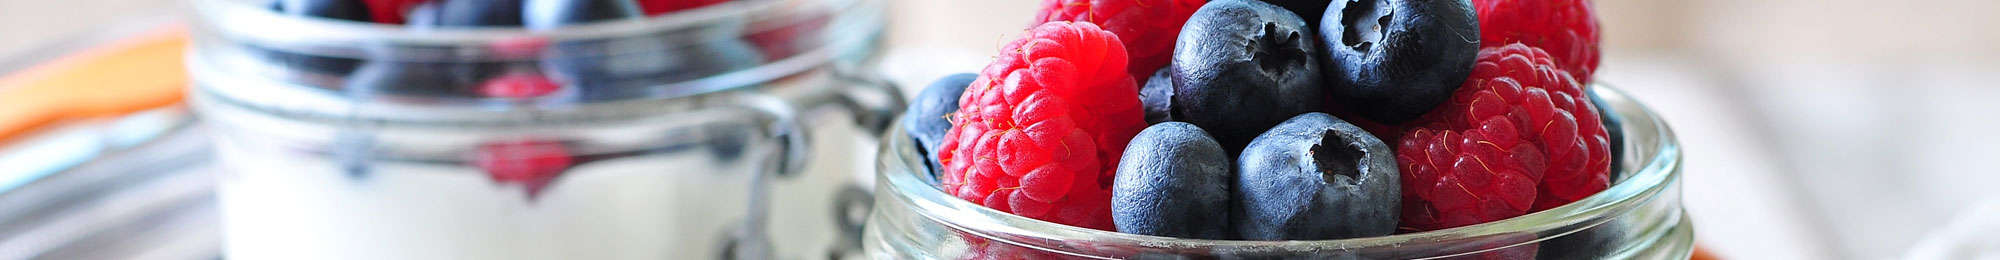 fresh made yogurt with berries